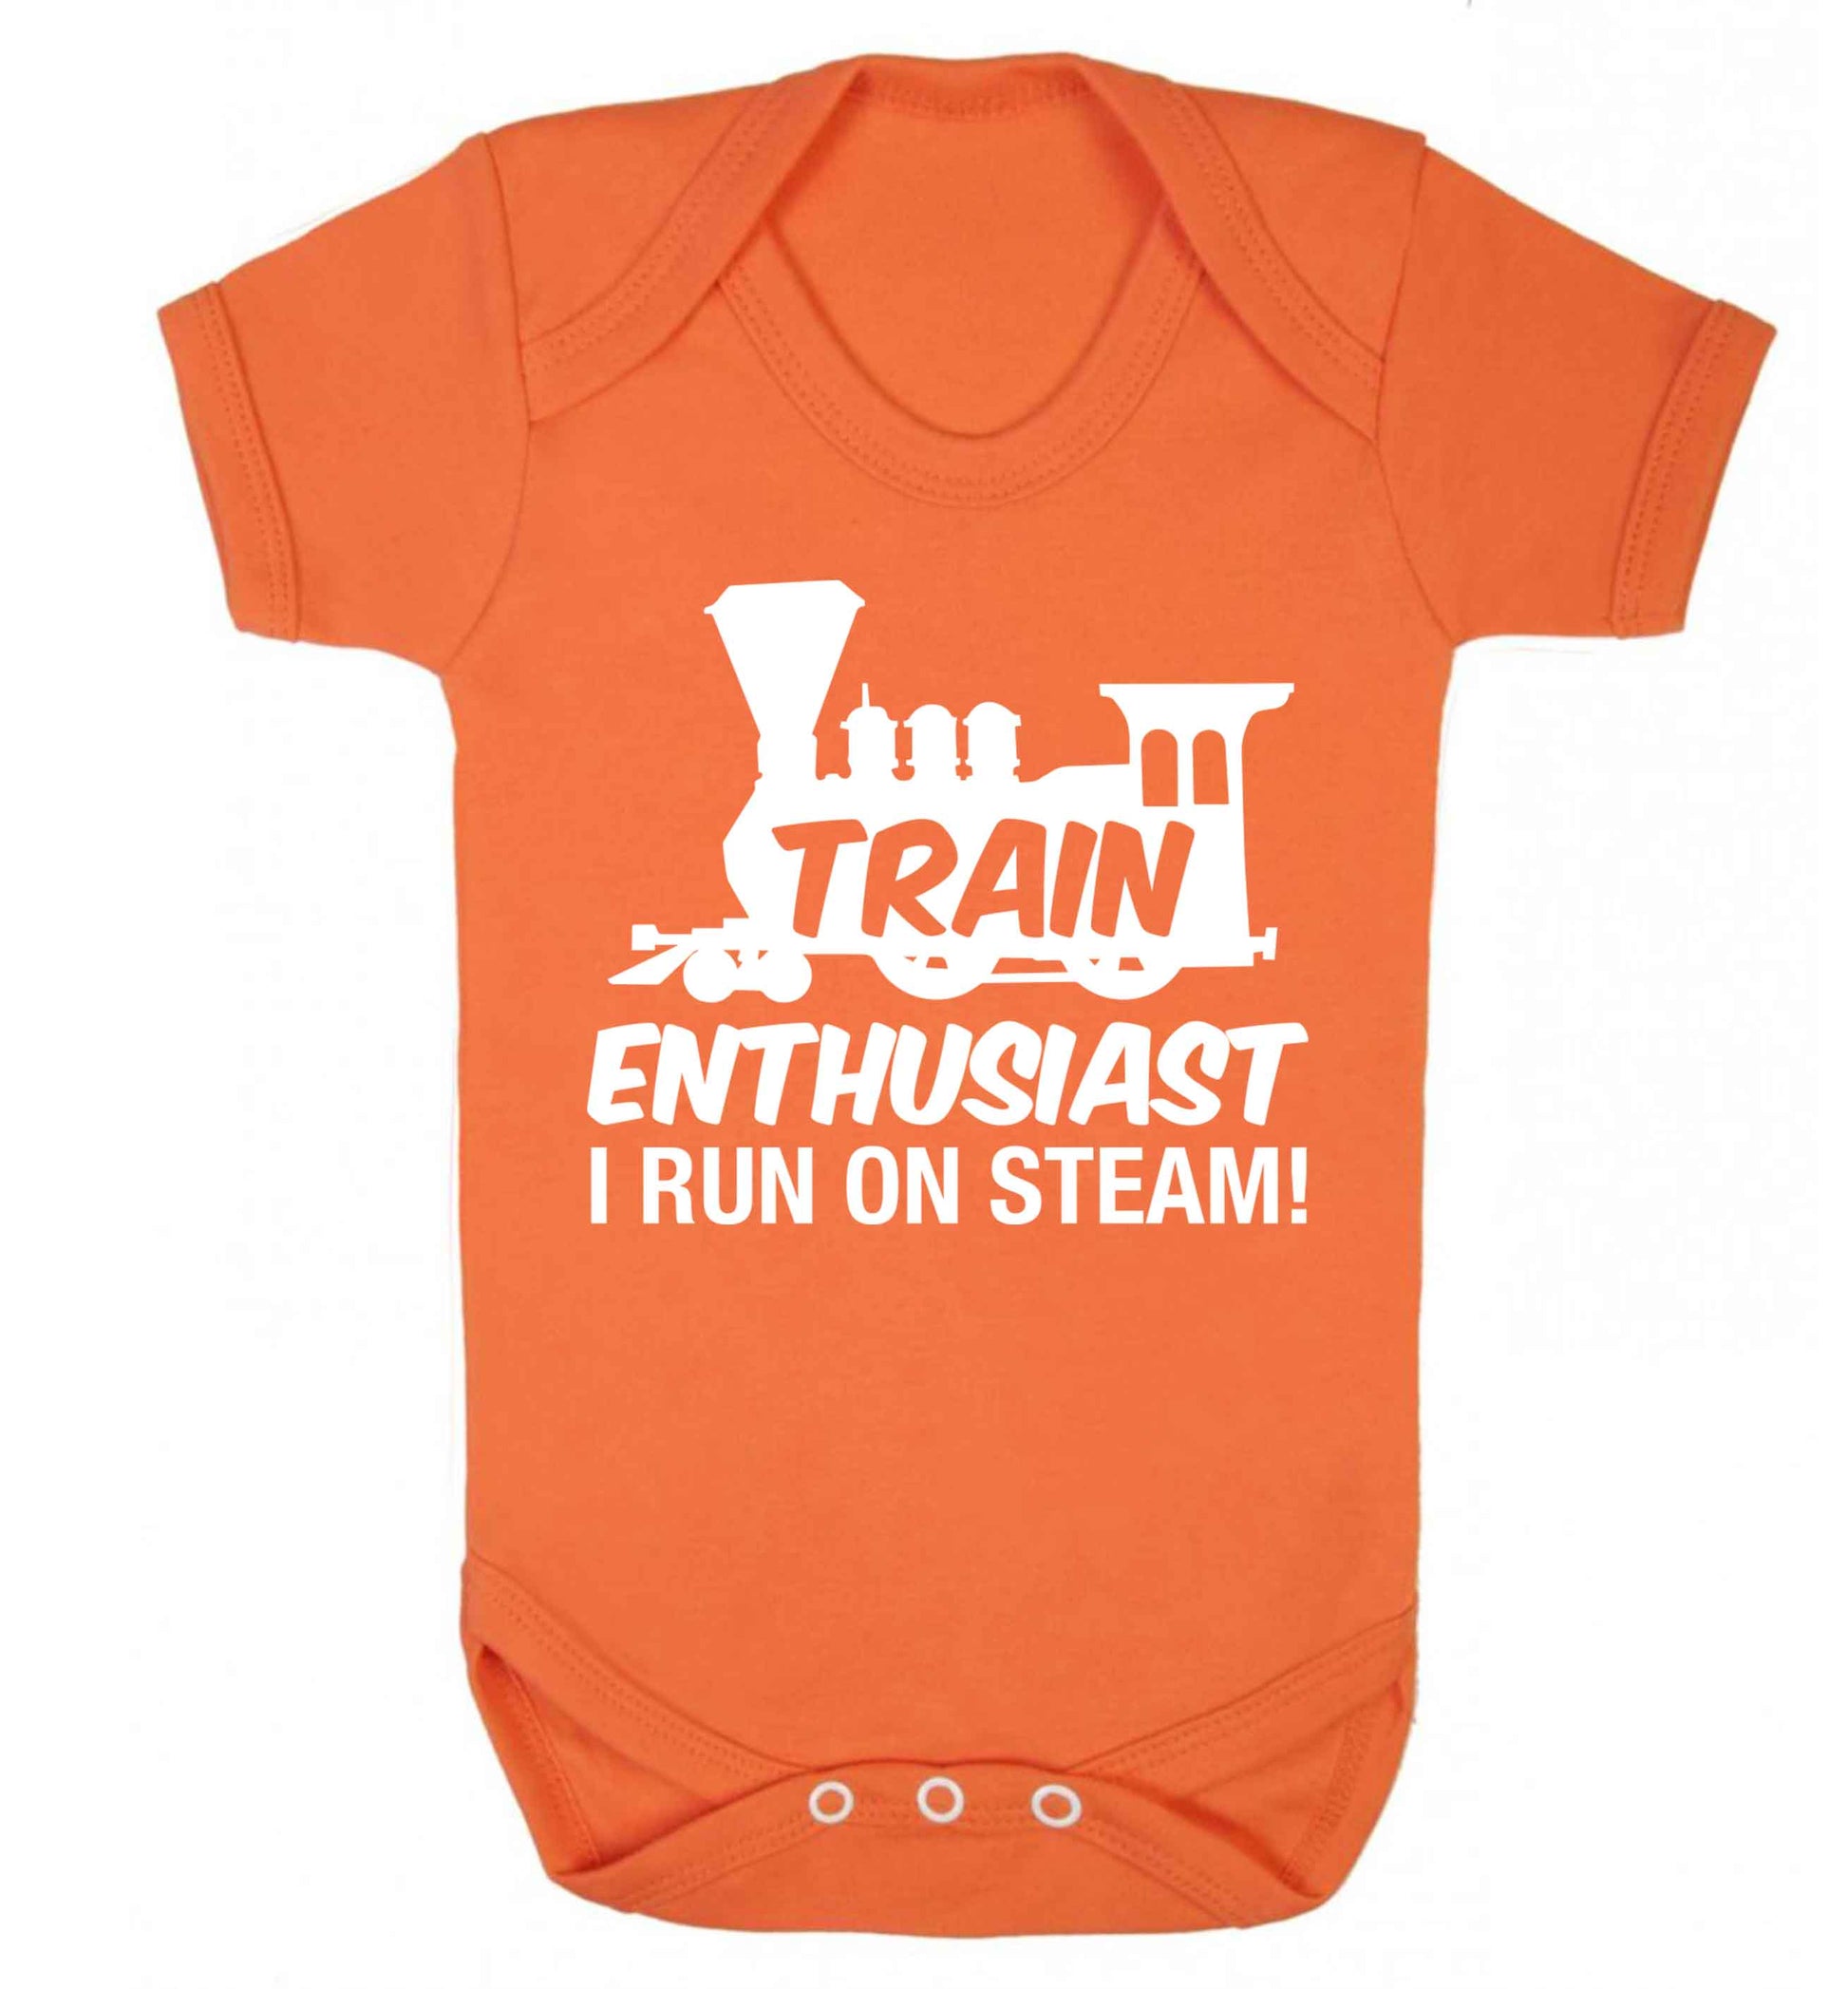 Train enthusiast I run on steam Baby Vest orange 18-24 months